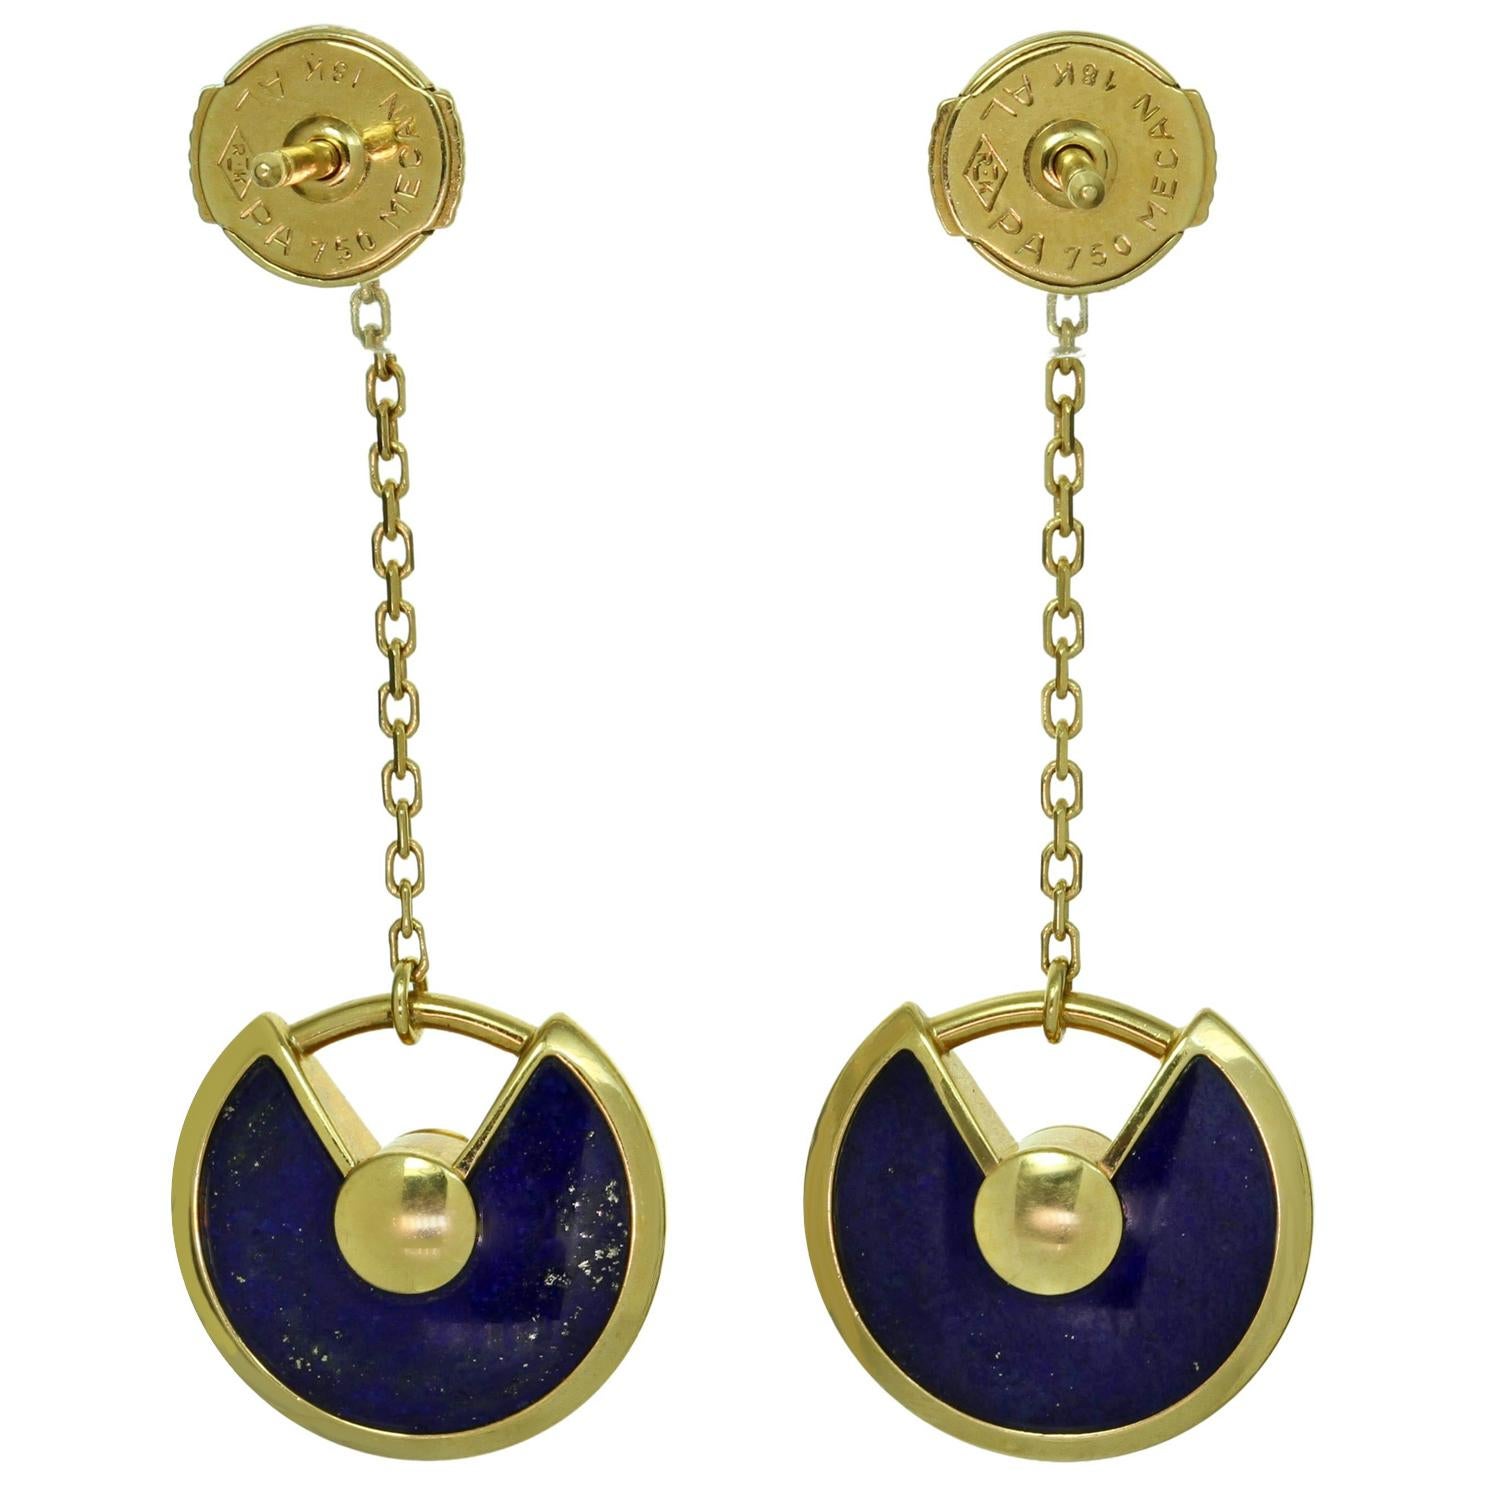 Diese wunderschönen Ohrringe aus der Collection Amulette de CARTIER sind aus 18 Karat Gelbgold gefertigt. Sie bestehen aus baumelnden Lapislazuli-Scheiben, die an einem Solitär-Diamanten in Kesselfassung aufgehängt sind und in der Mitte mit einem